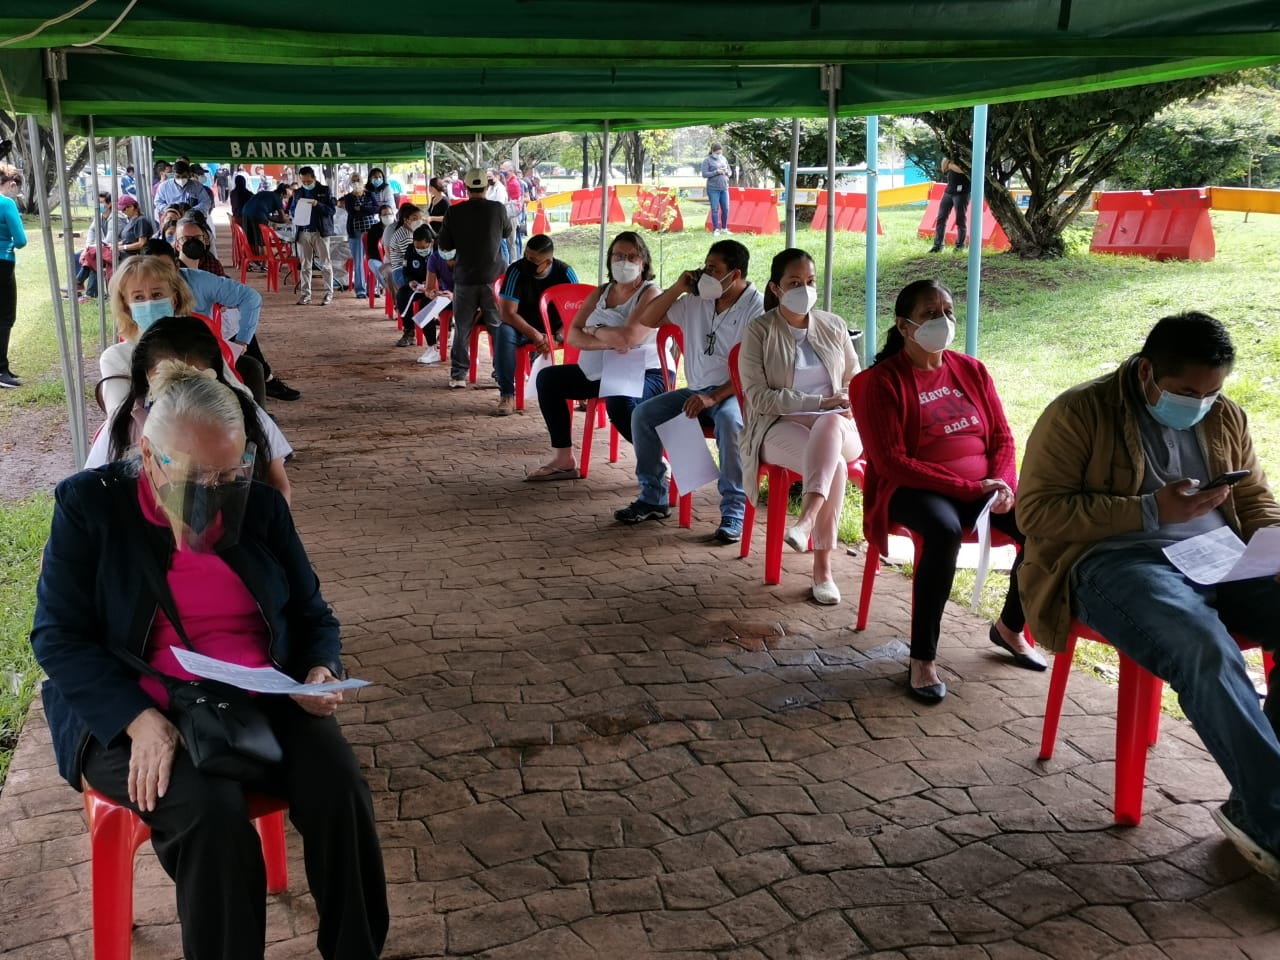 La demanda de pruebas de coronavirus se ha incrementado considerablemente en Guatemala. (Foto Prensa Libre: Érick Ávila)